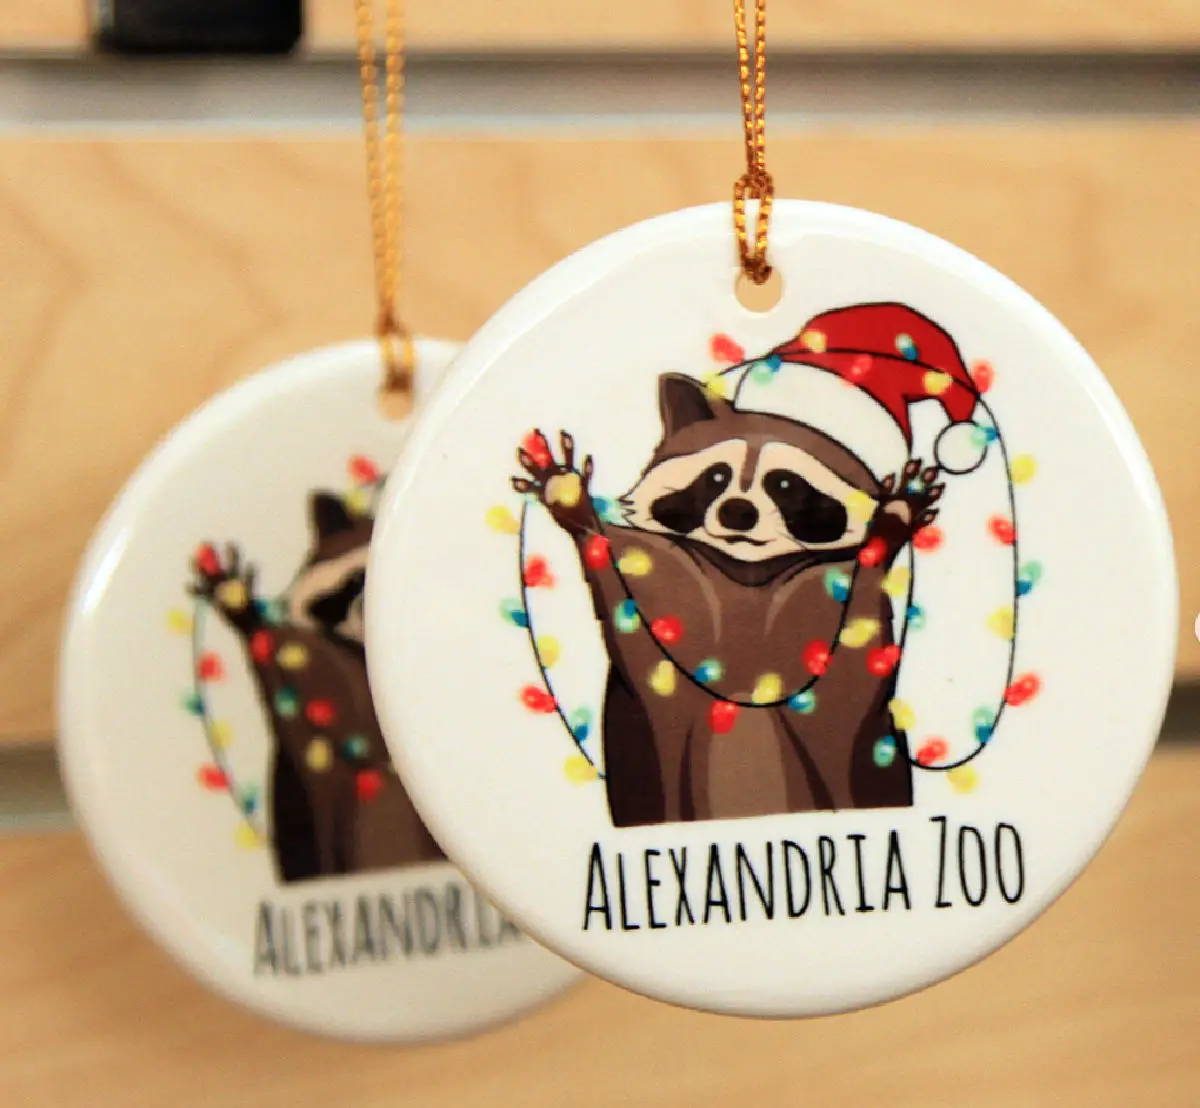 alexandria-zoo-holiday-ornament